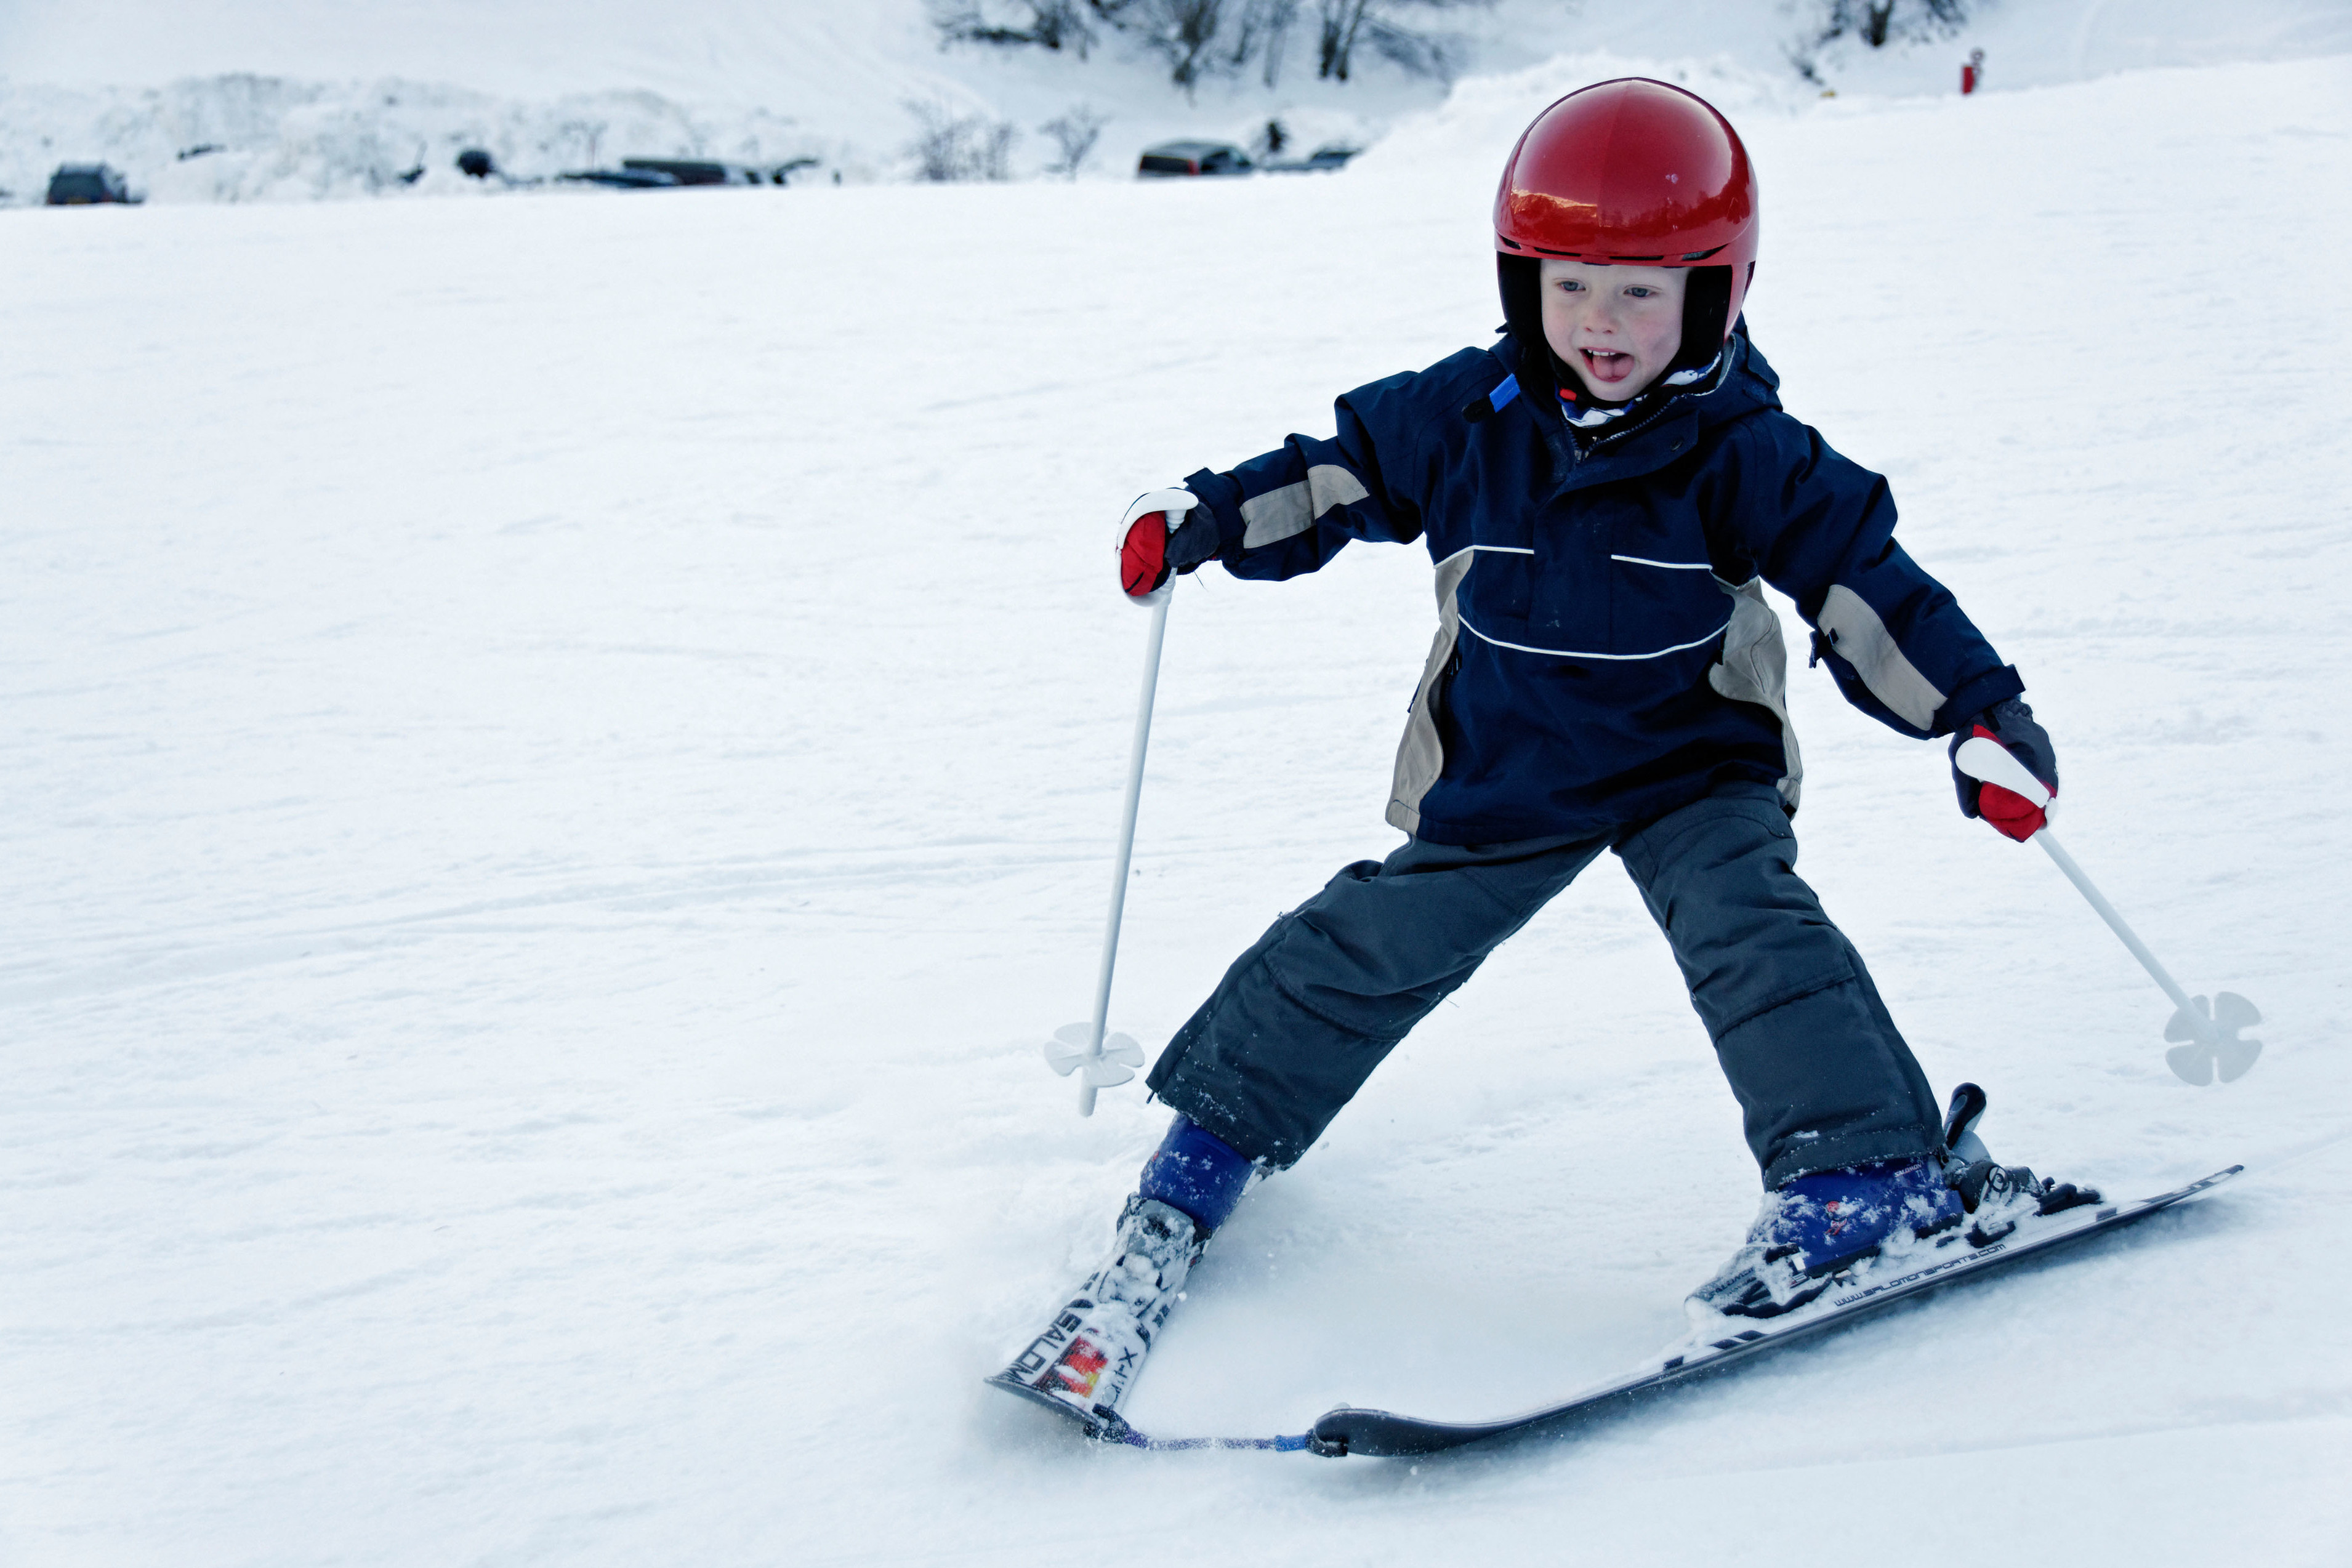 滑雪季丨冬天带娃去滑雪要穿啥?儿童滑雪攻略第二期来啦!(中篇)